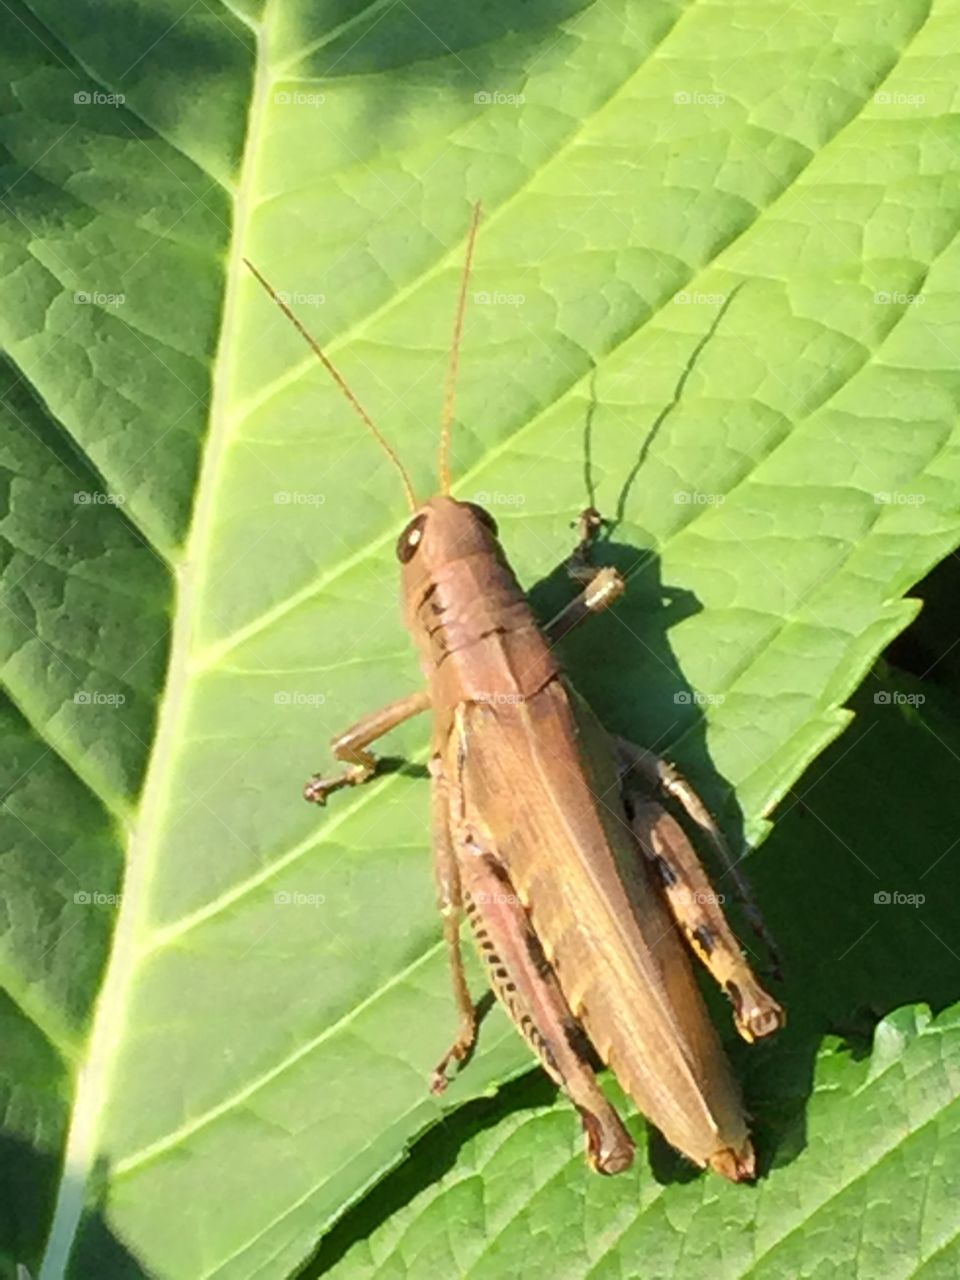 Hoppy hoppy grasshopper